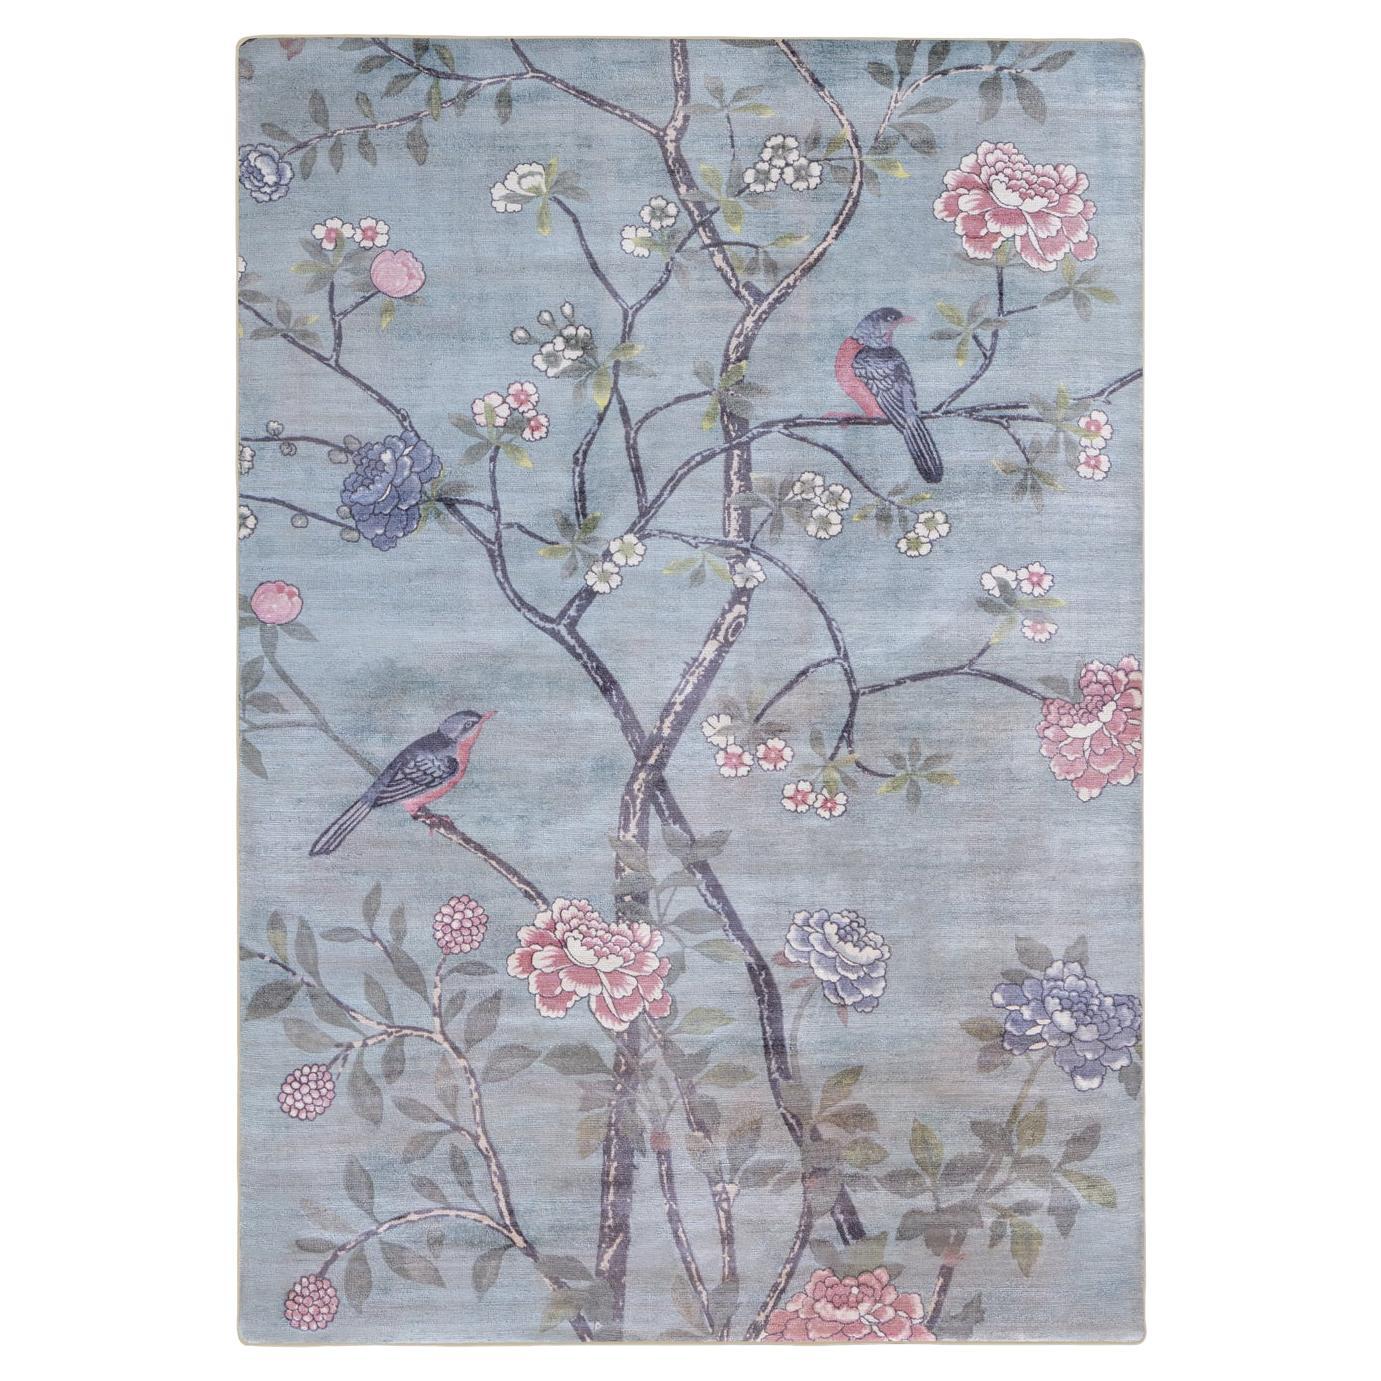 Zeitgenössischer farbenfroher Teppich mit Zeichnungen im japanischen Stil von Deanna Comellini 300x400 cm